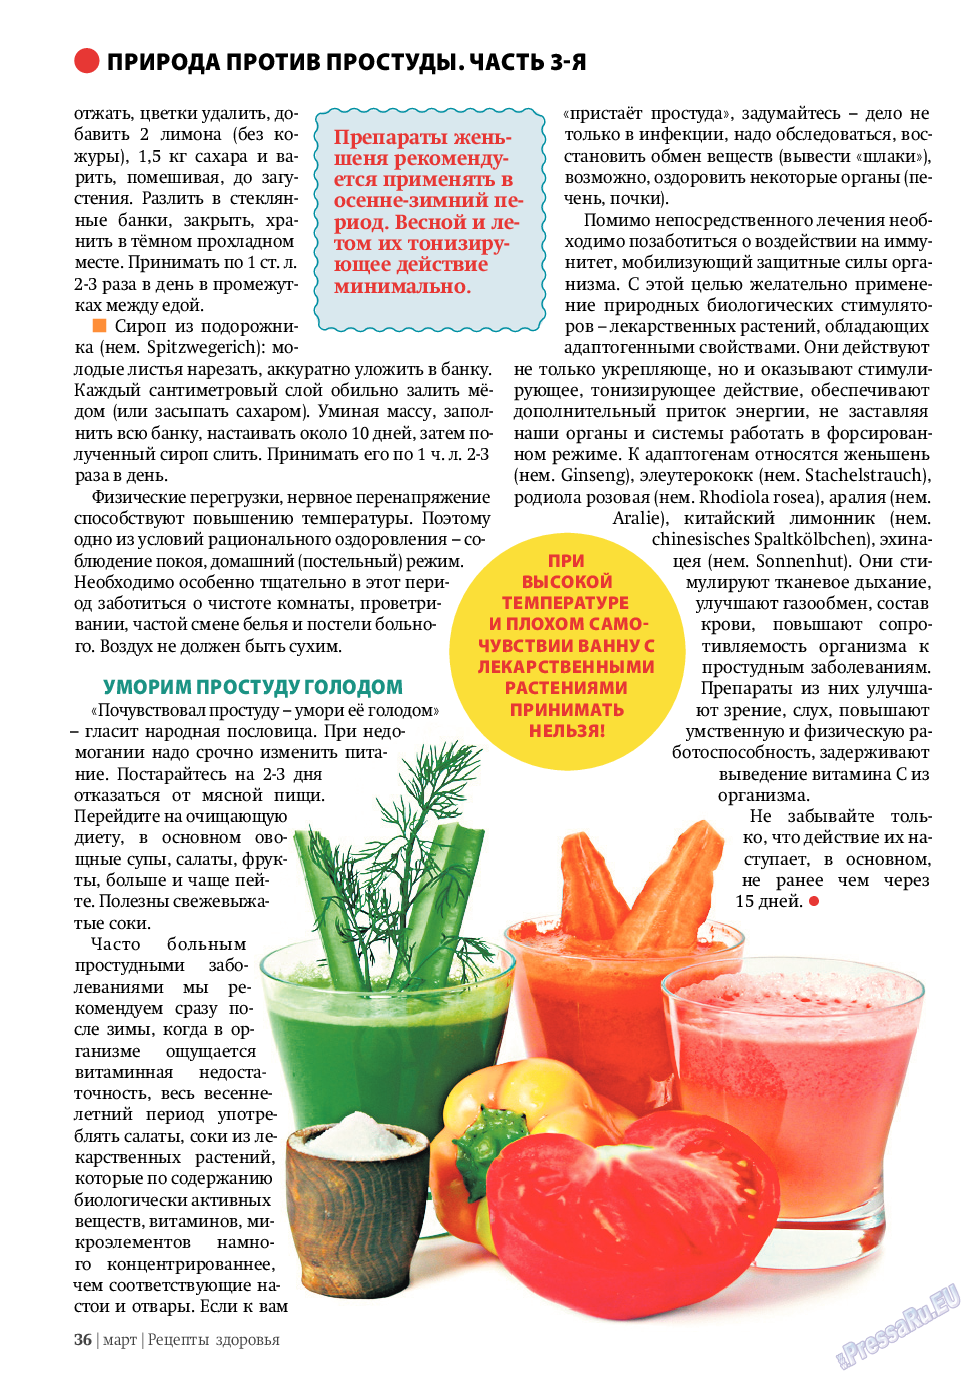 Рецепты здоровья, журнал. 2011 №3 стр.36